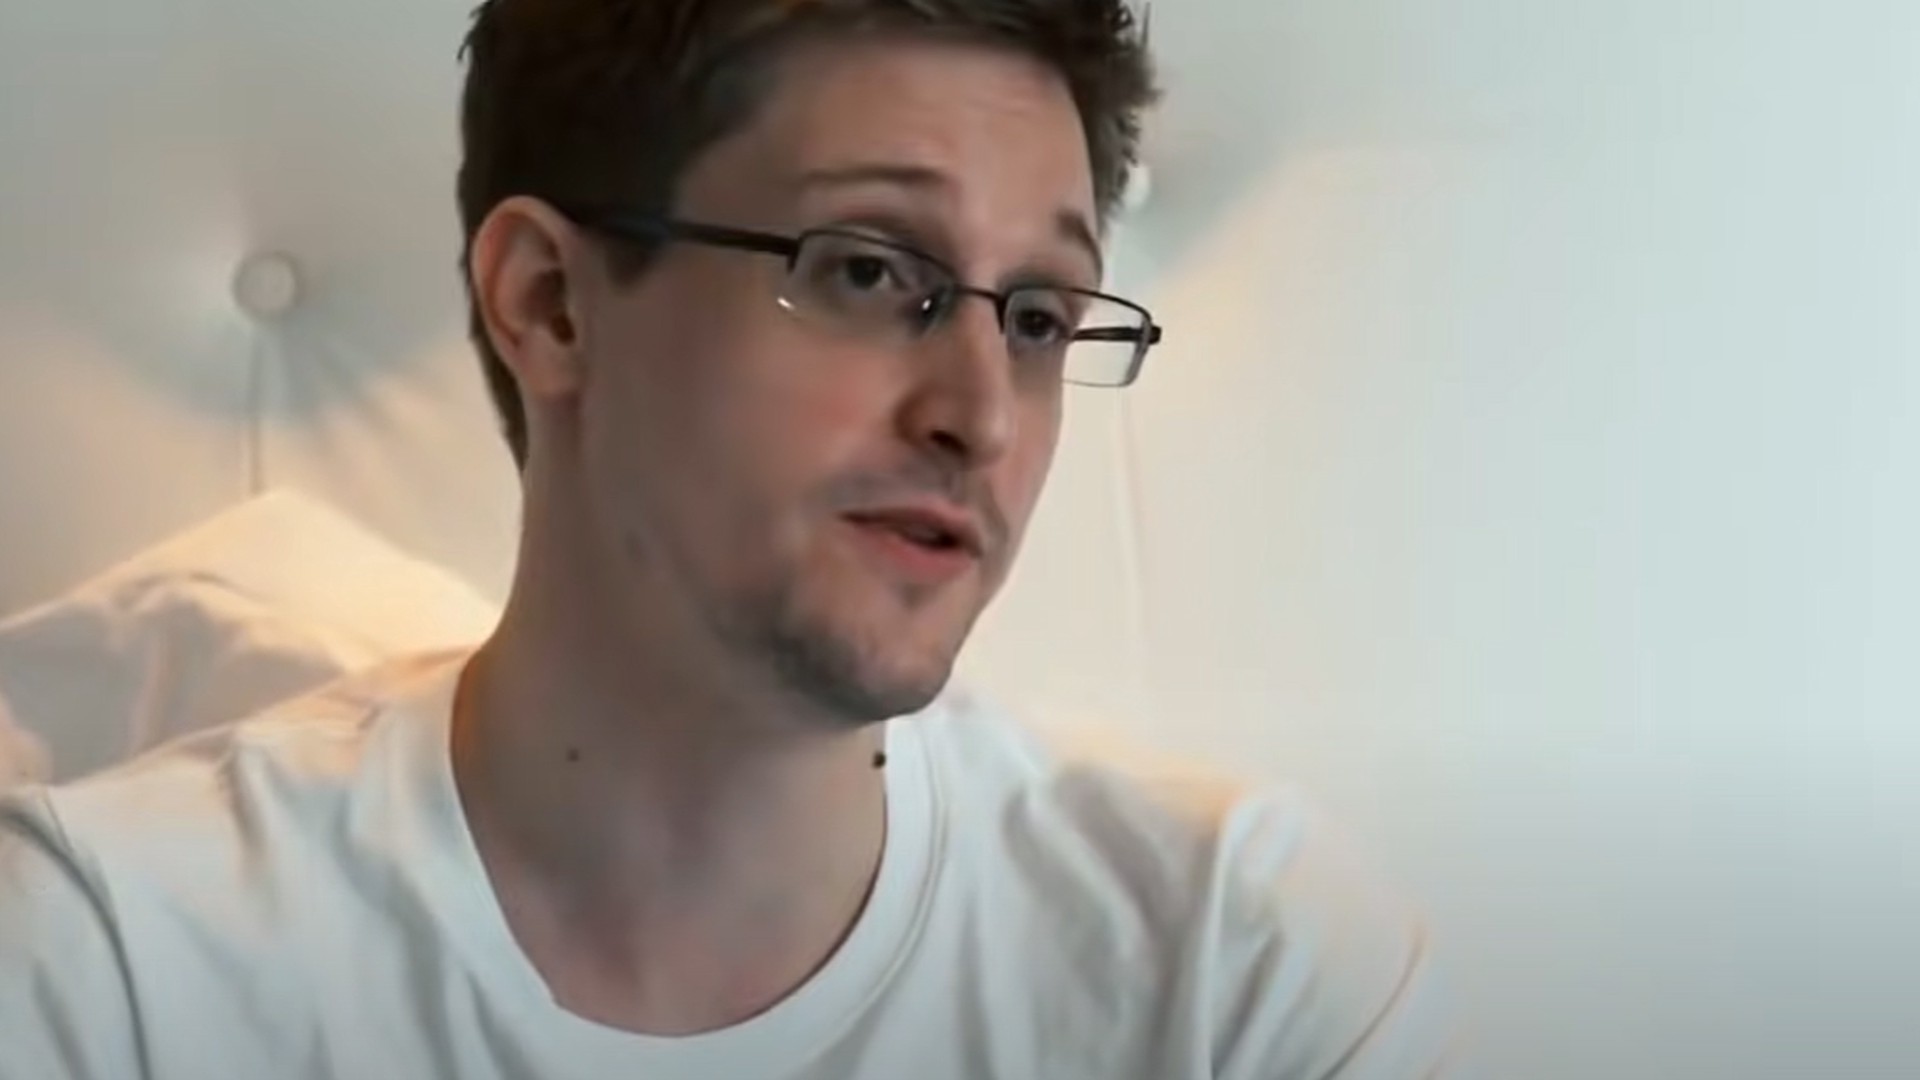 Госдепартамент США считает, что Сноудену необходимо вернуться в страну и предстать перед судом